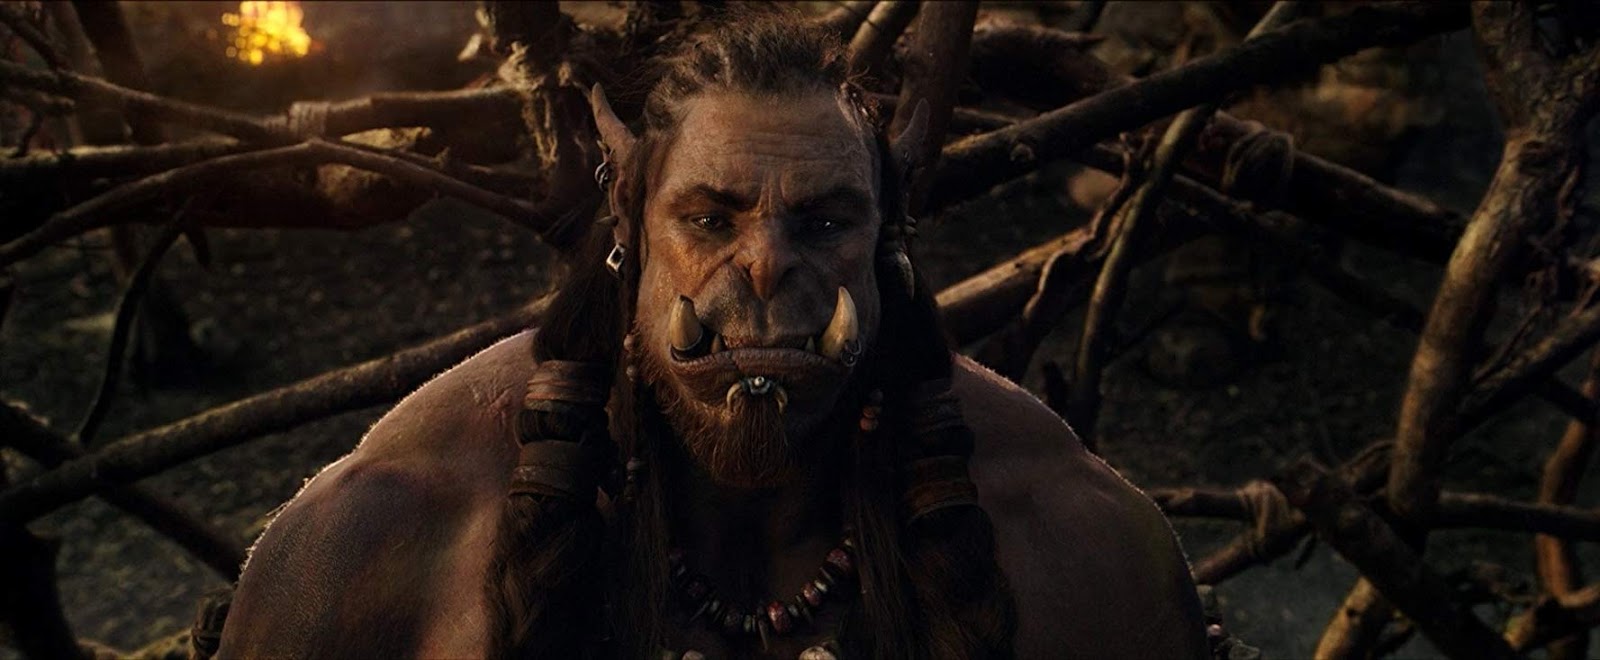  Warcraft El Primer Encuentro de dos Mundos (2016) HD 1080p Latino